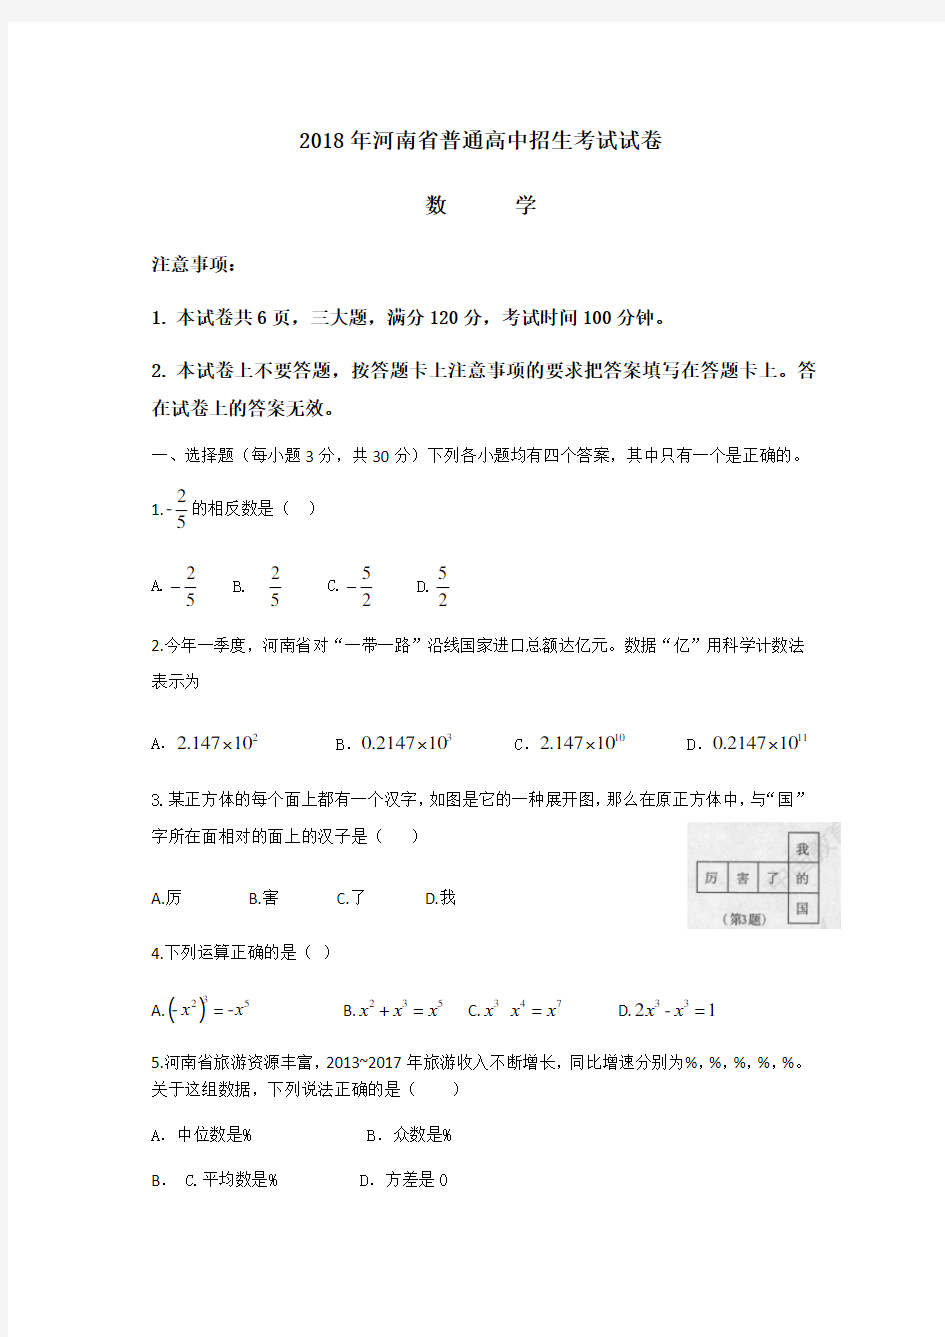 河南省普通高中招生考试数学试卷及答案 